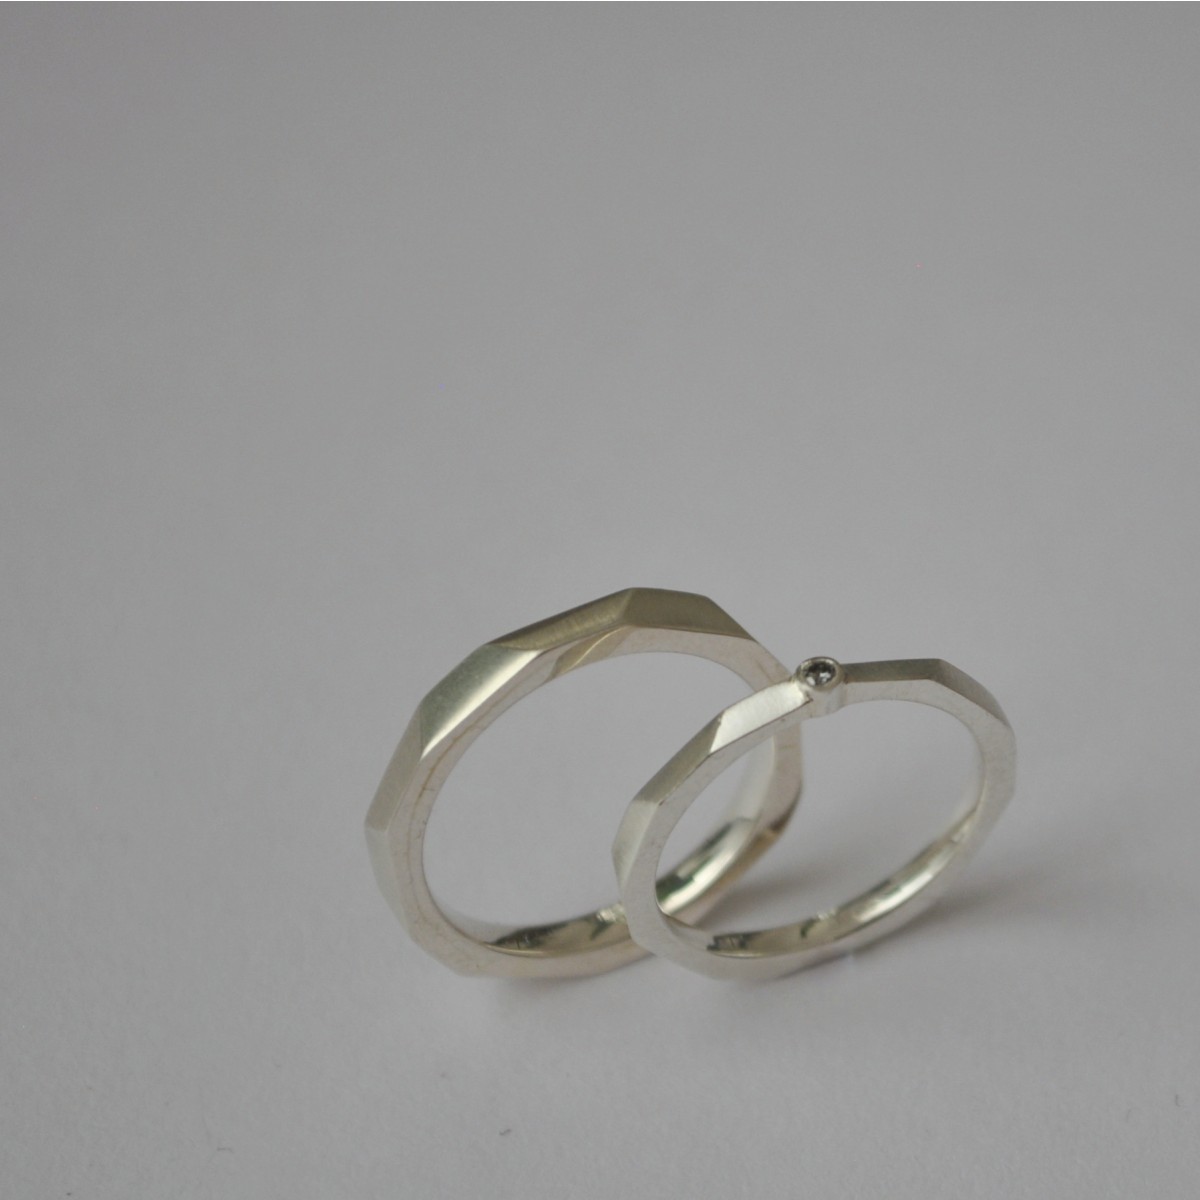 Ring "Verkantet" aus 925/- Silber von Doppelludwig